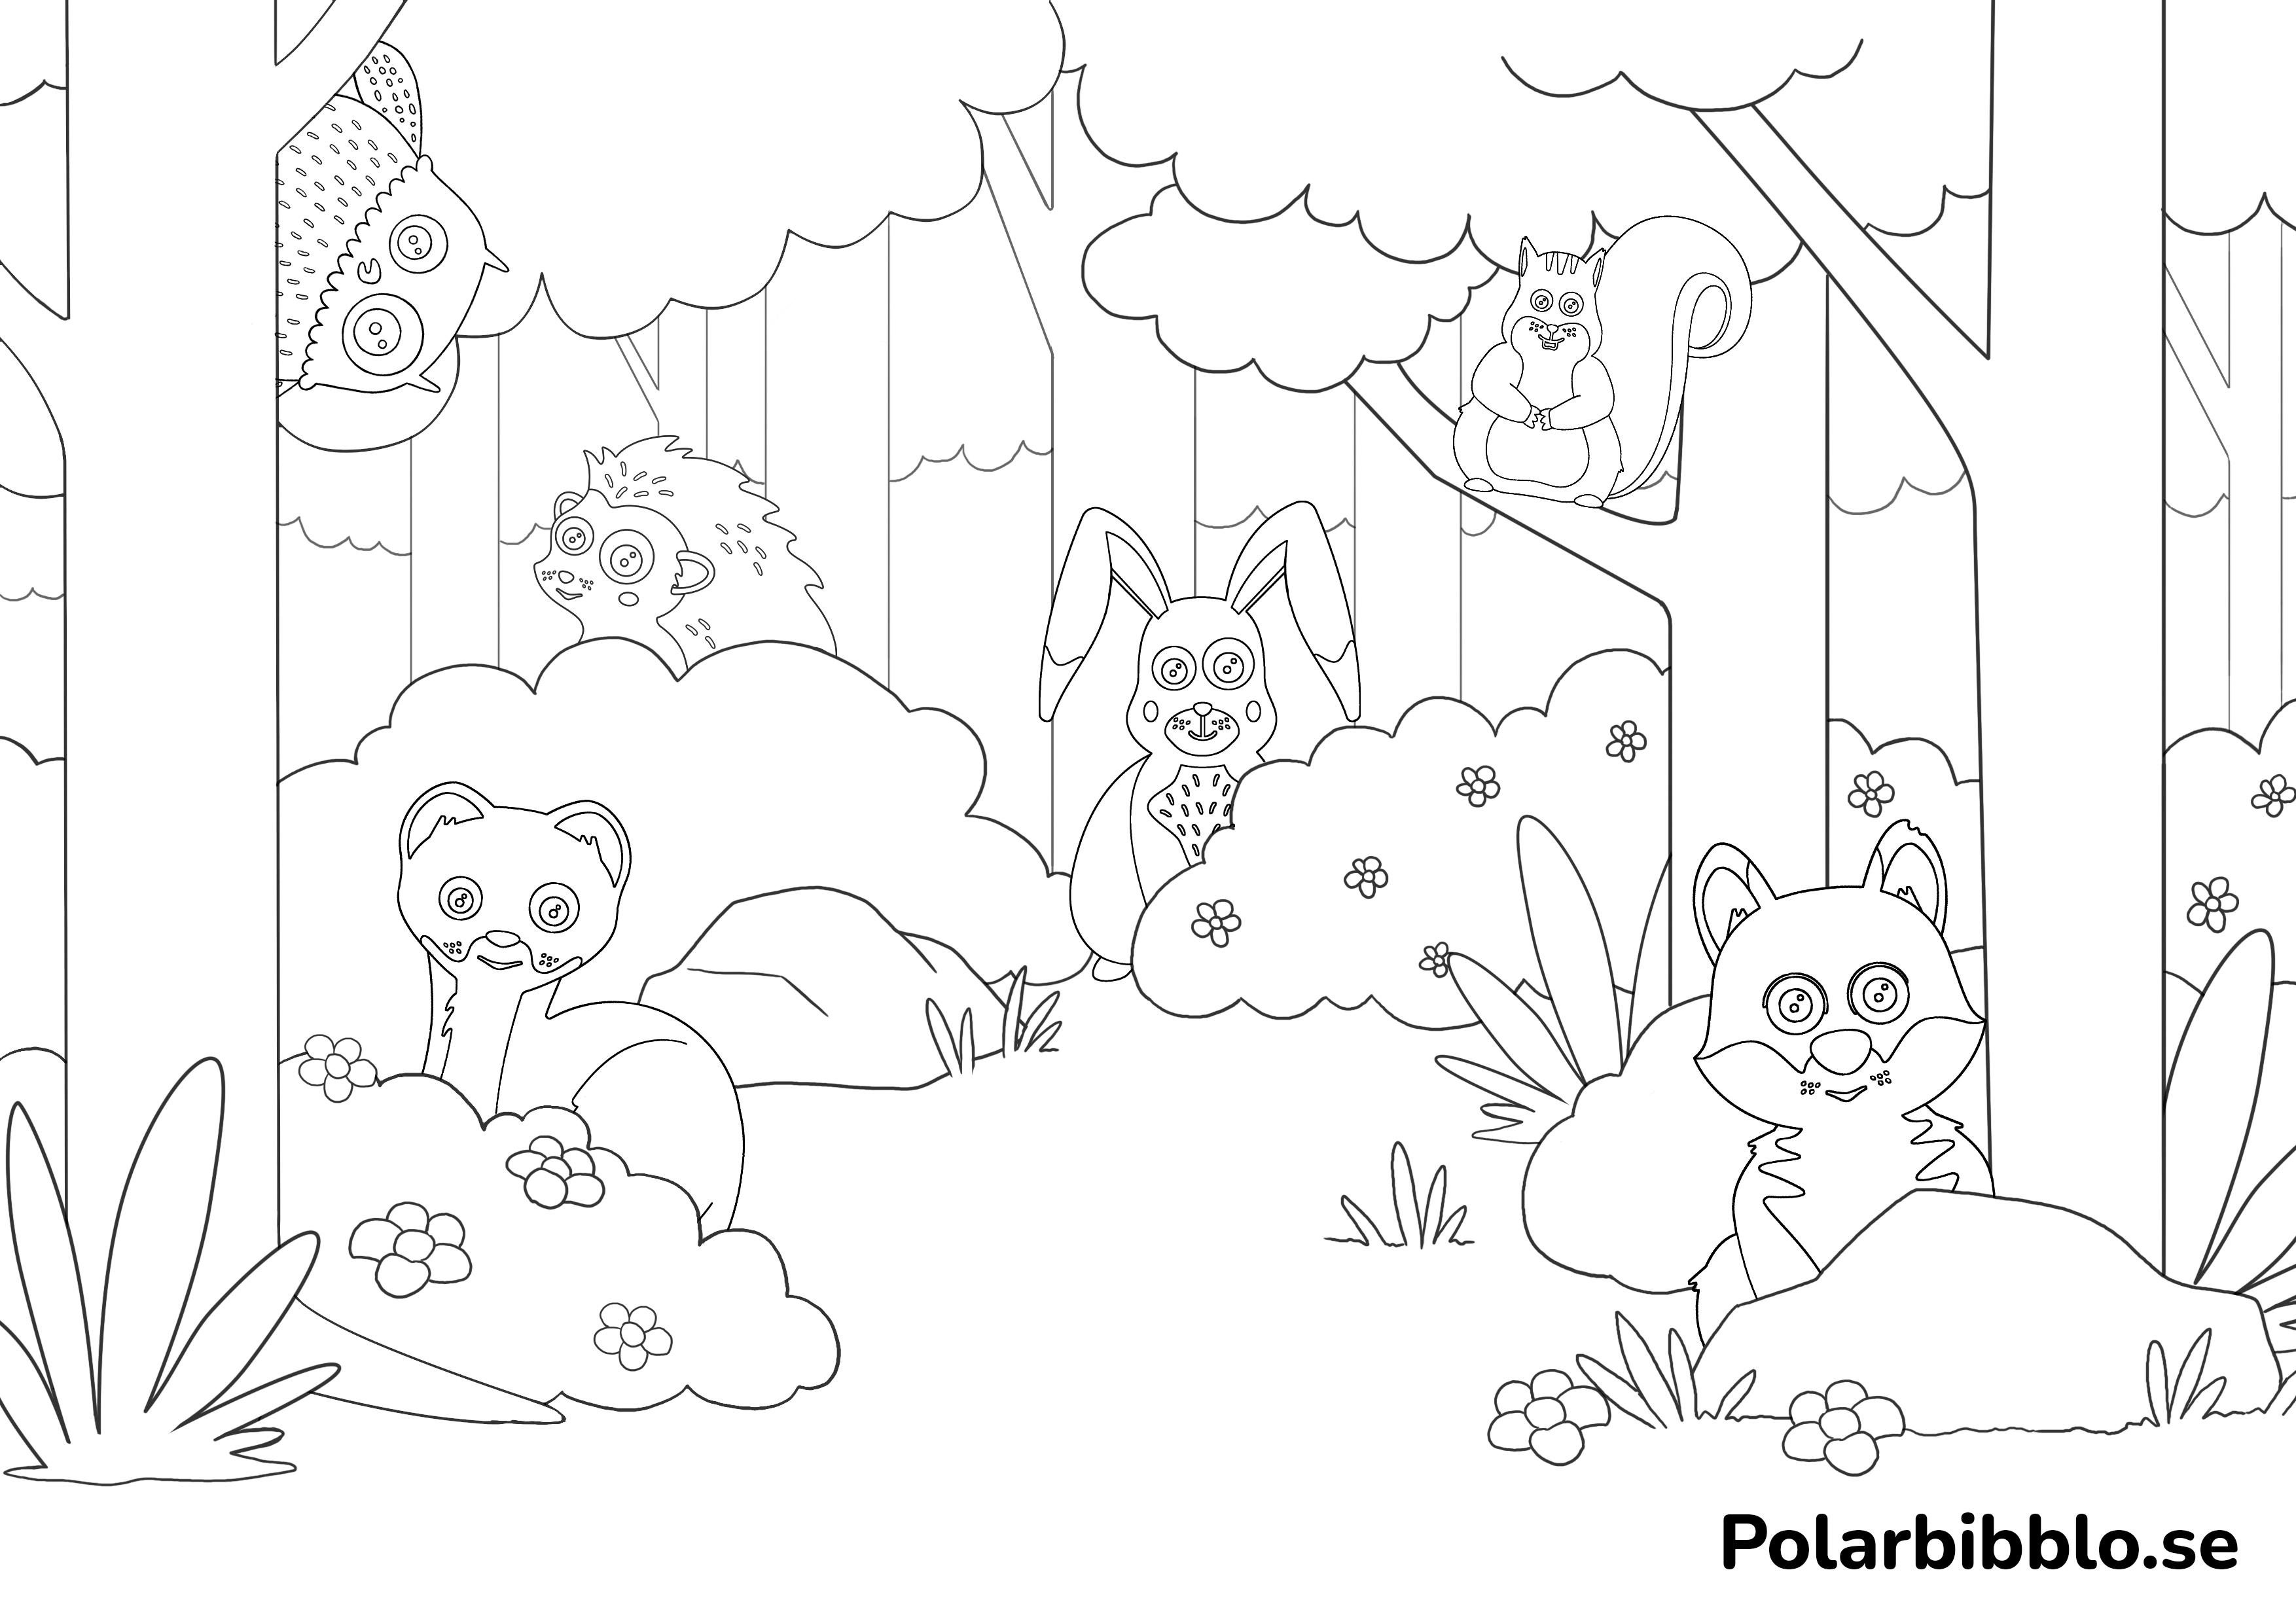 Polarbibblos språkdjur leker kurragömma i en skog.